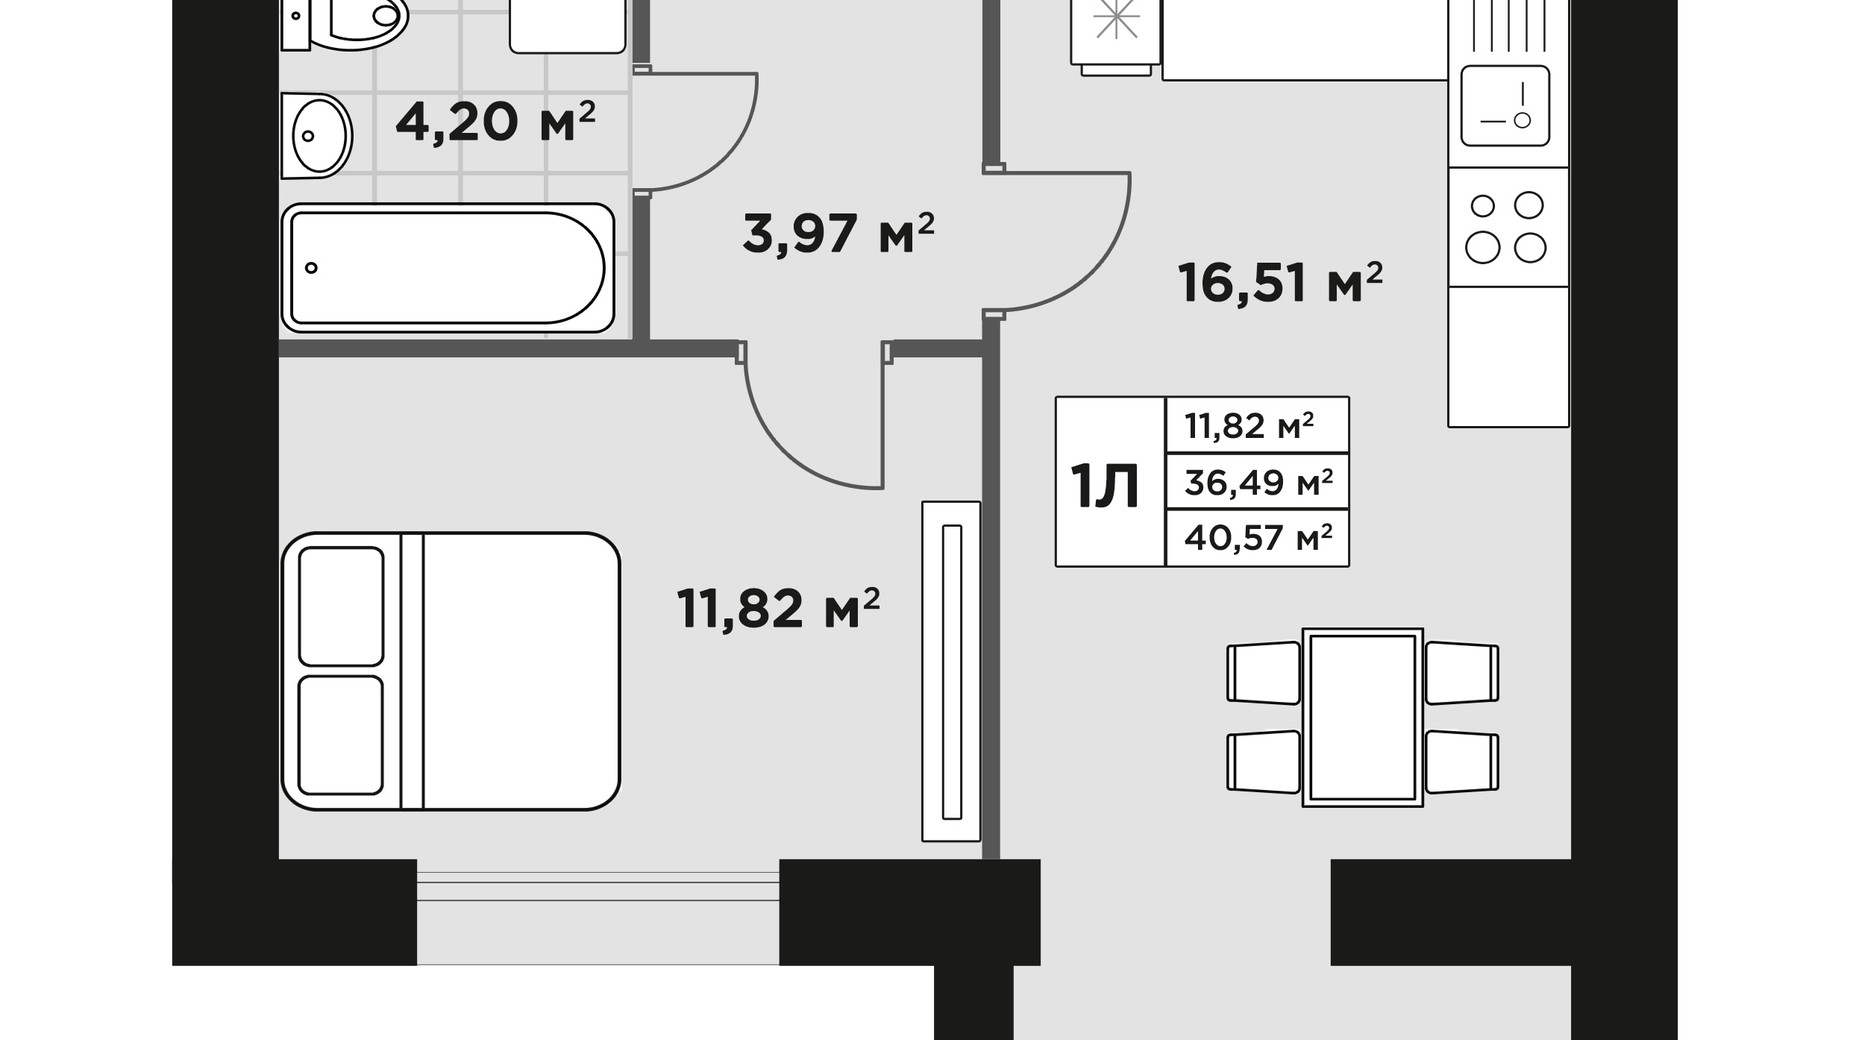 Планировка 1-комнатной квартиры в ЖК Millennium Park 40.57 м², фото 606512